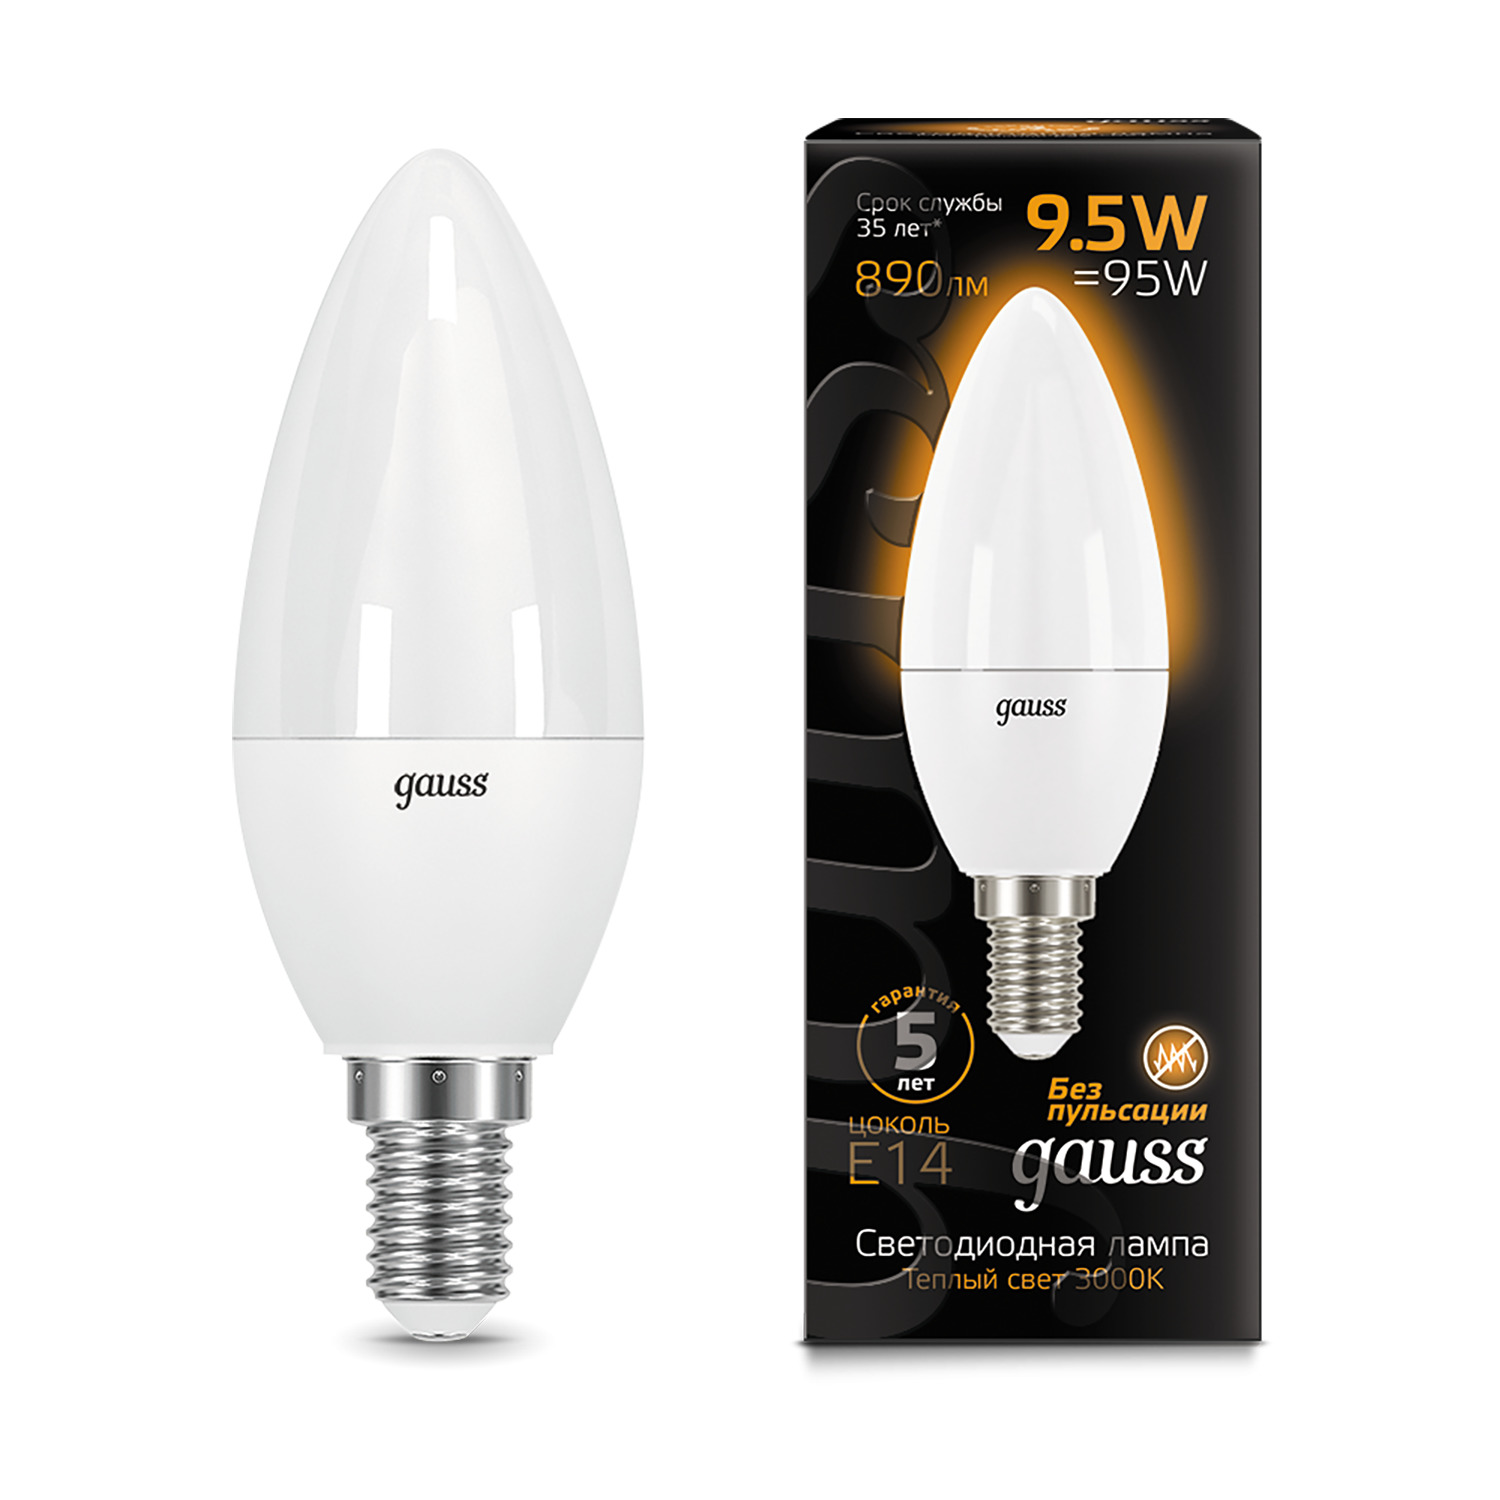 Лампа Gauss LED Свеча E14 9.5W 890lm 3000К 1/10/50 gauss led elementary candle 6w e14 3000k 1 10 100